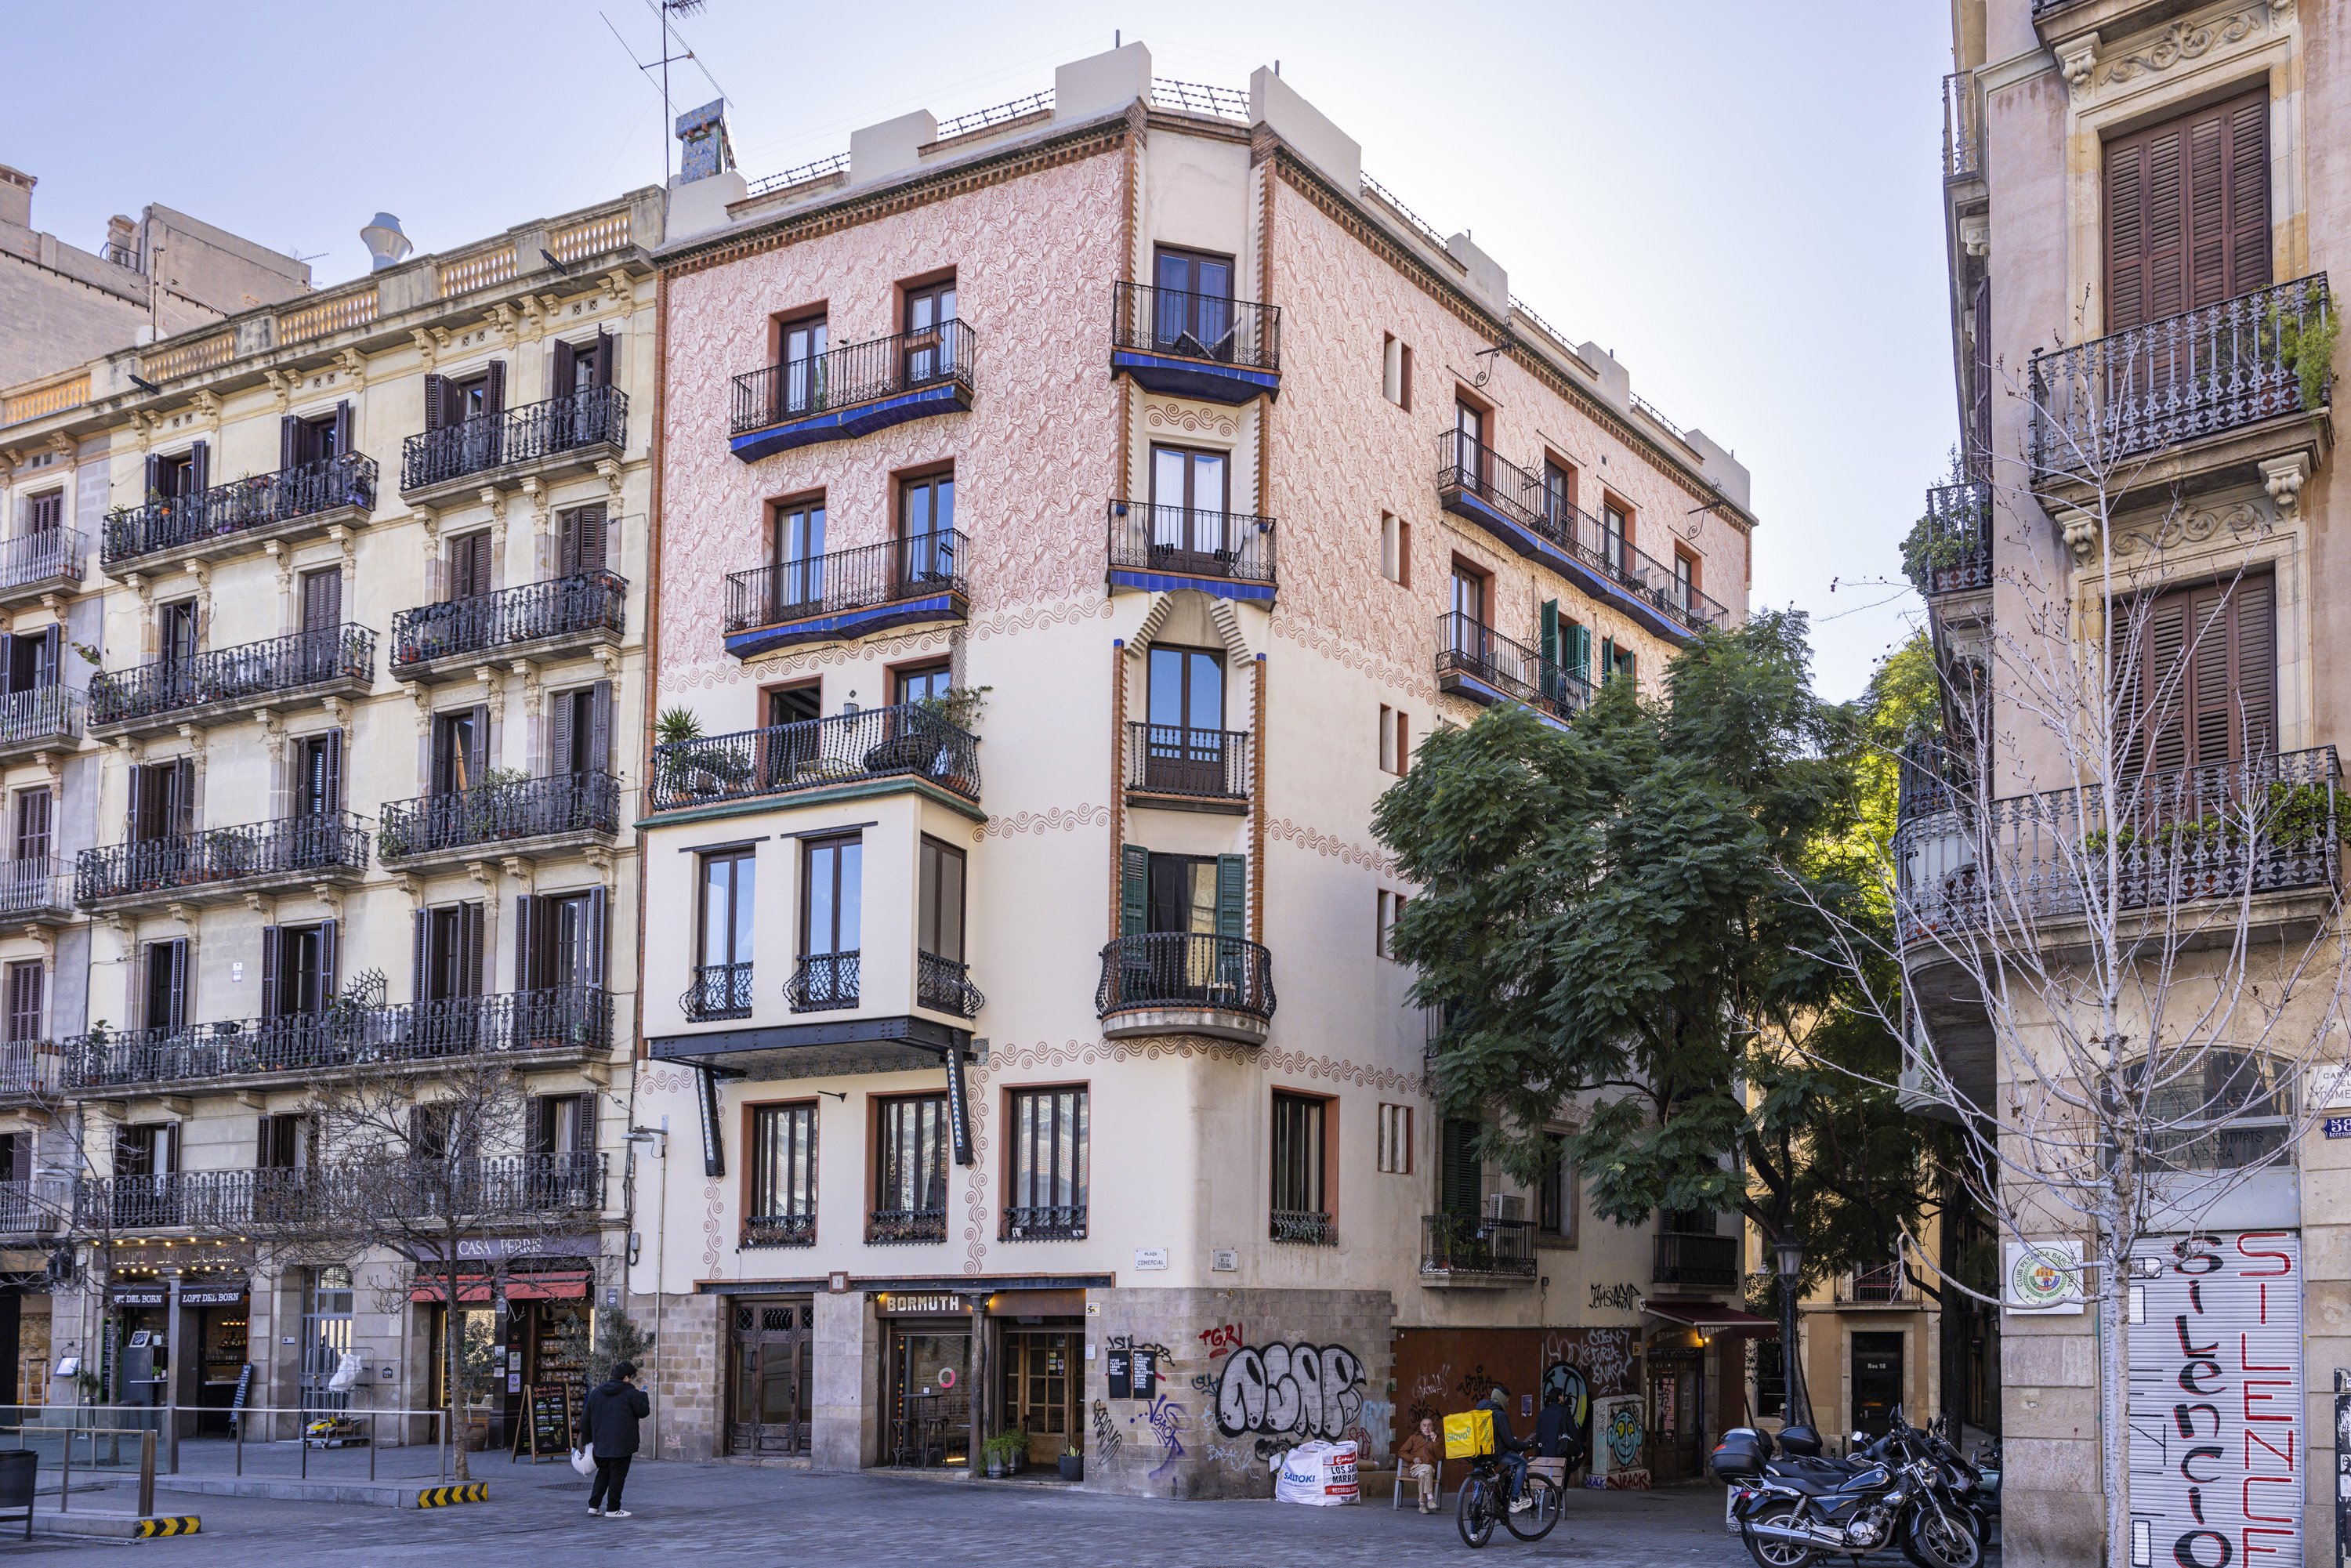 Tatuatges urbans, deliri d'esgrafiats als edificis de Barcelona